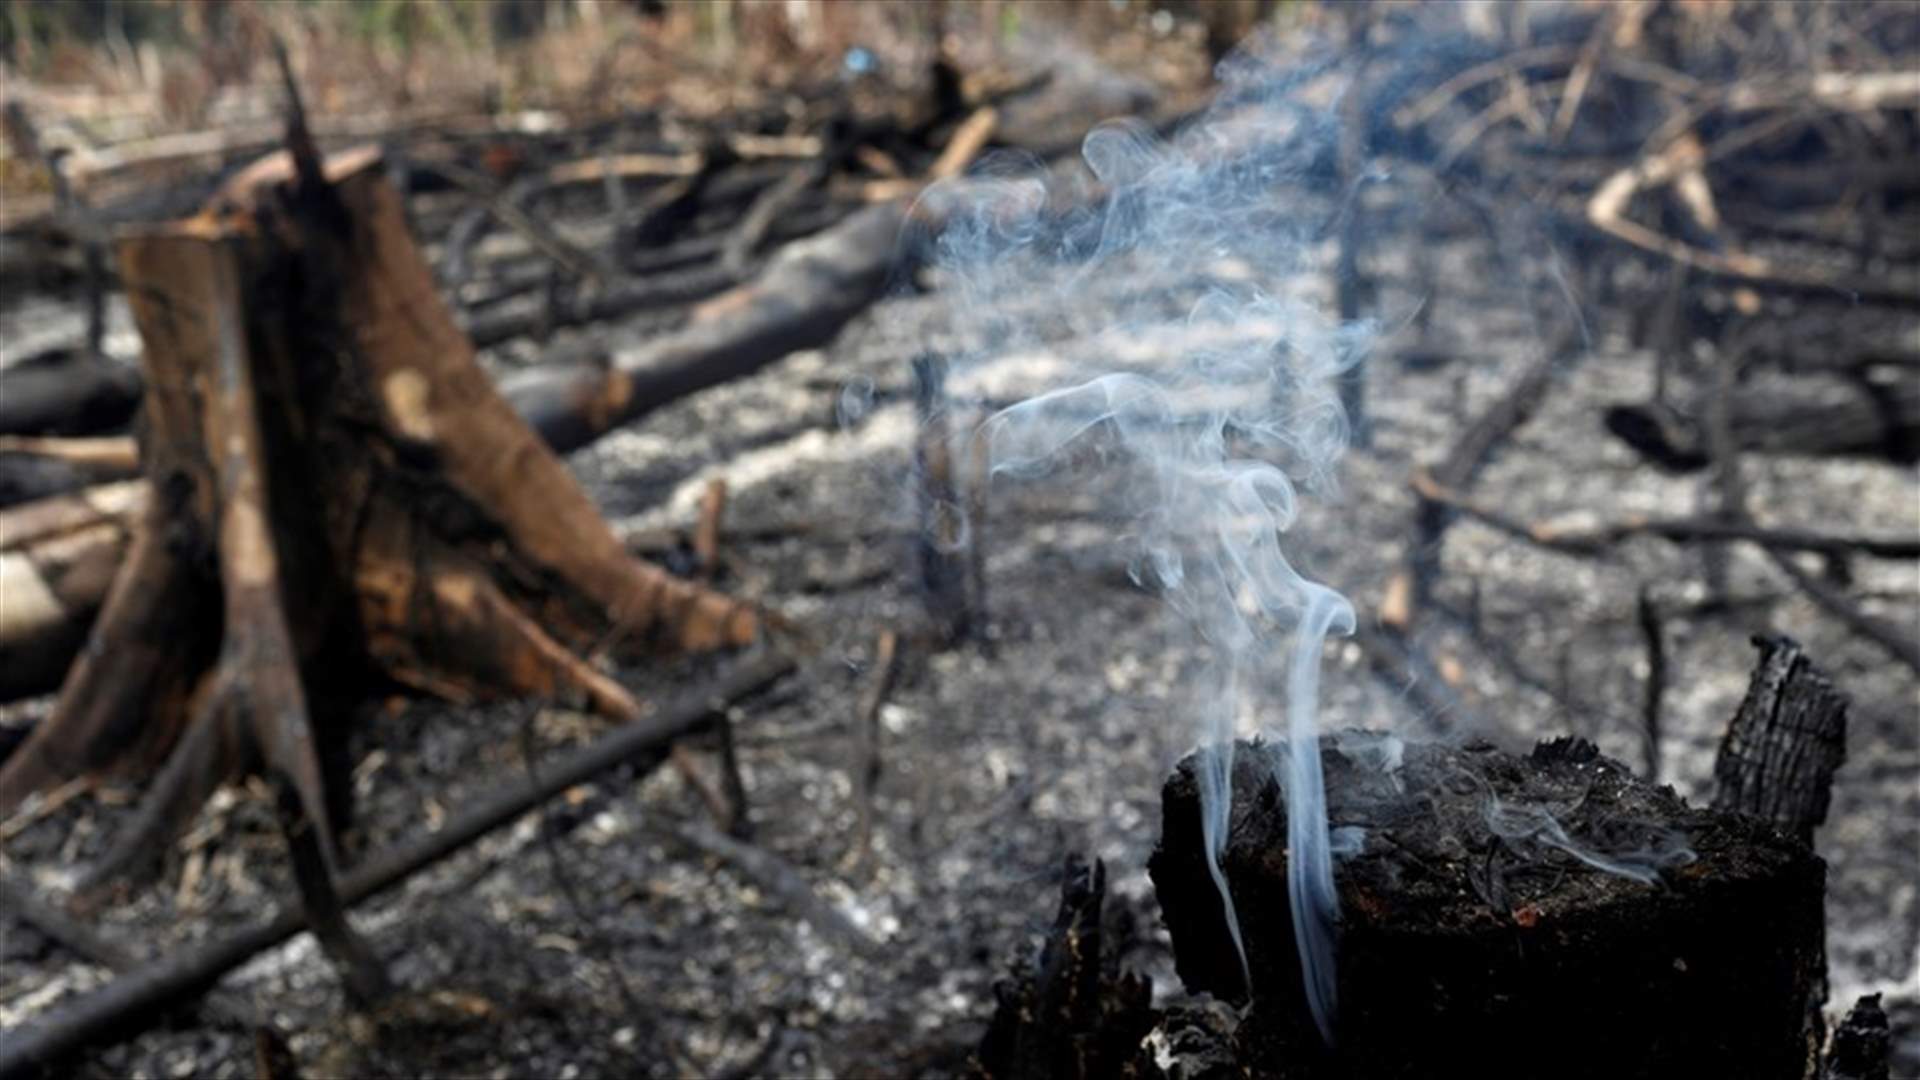 آلاف الجنود على أهبة الاستعداد لمكافحة حرائق الأمازون... وصور تظهر بعض المساحات المحترقة